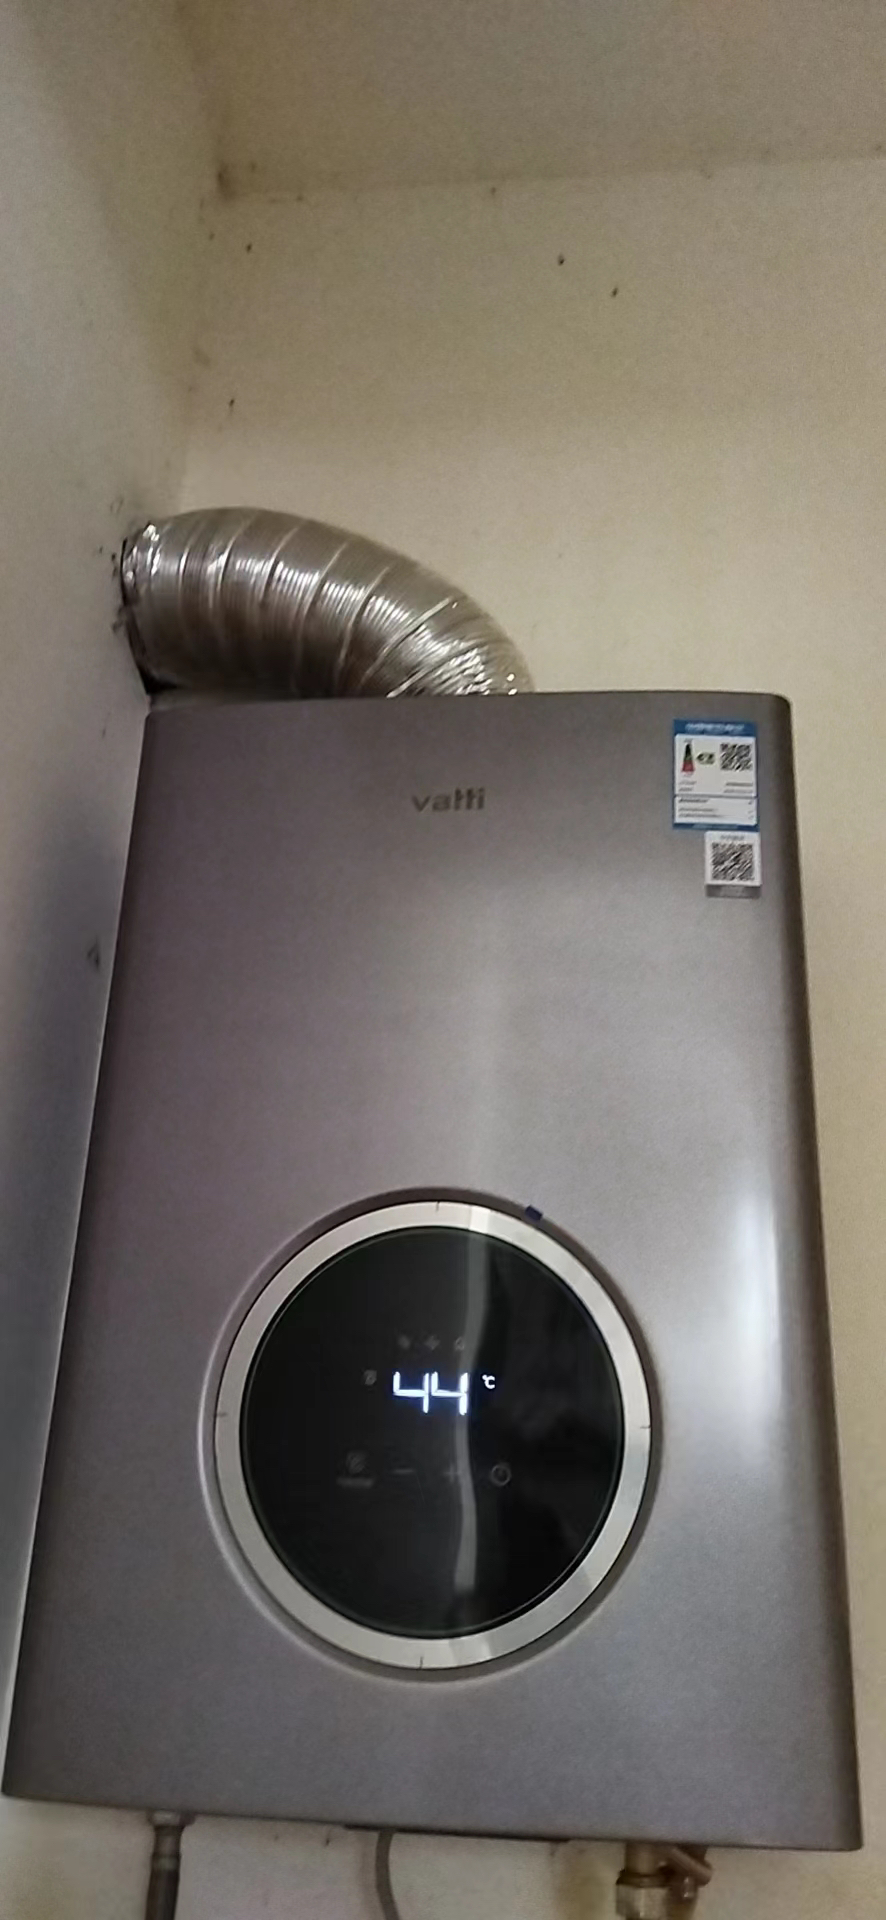 华帝(vatti)燃气热水器16升天然气 智能恒温 气电双断 多重防冻 低水压启动 灰色家用 i12103-16晒单图